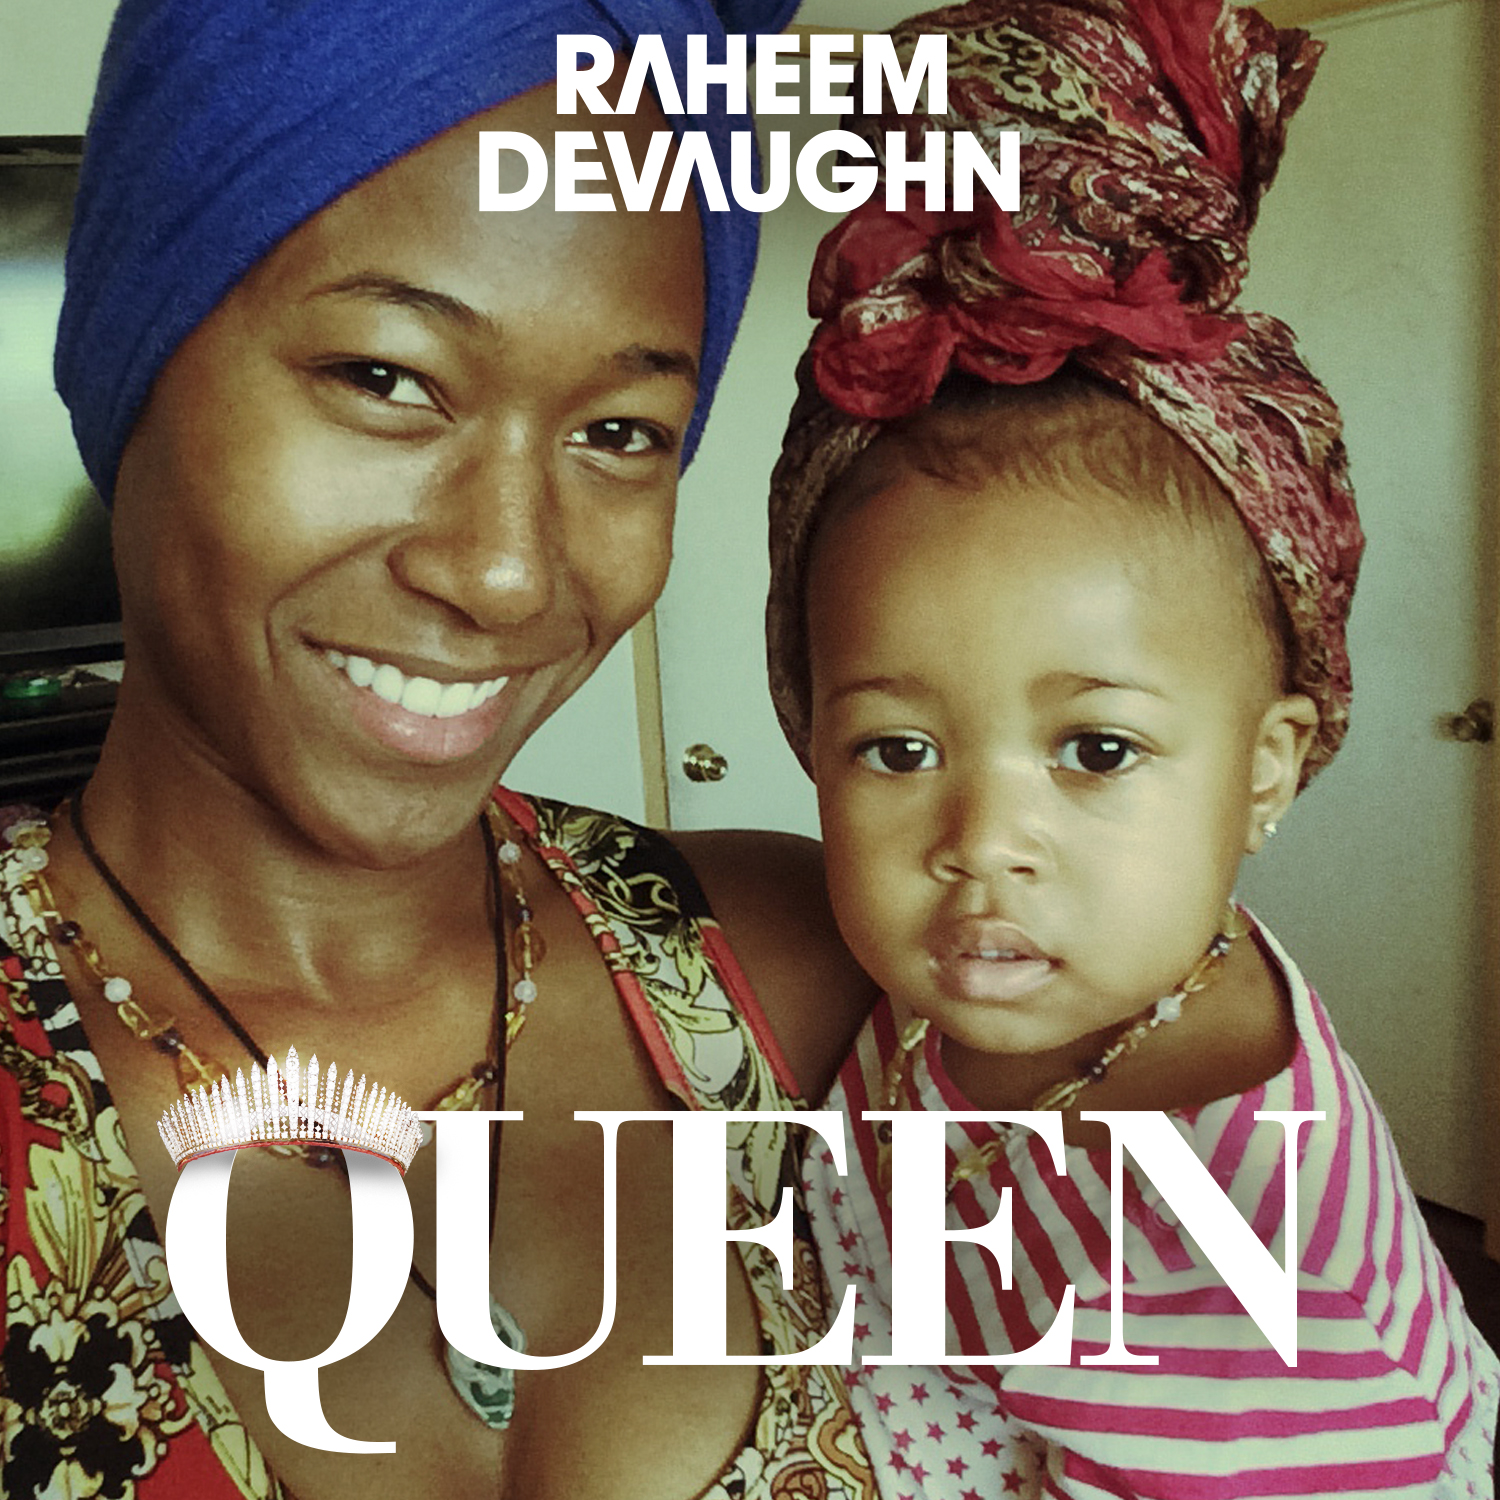 New Video: Raheem DeVaughn "Queen"